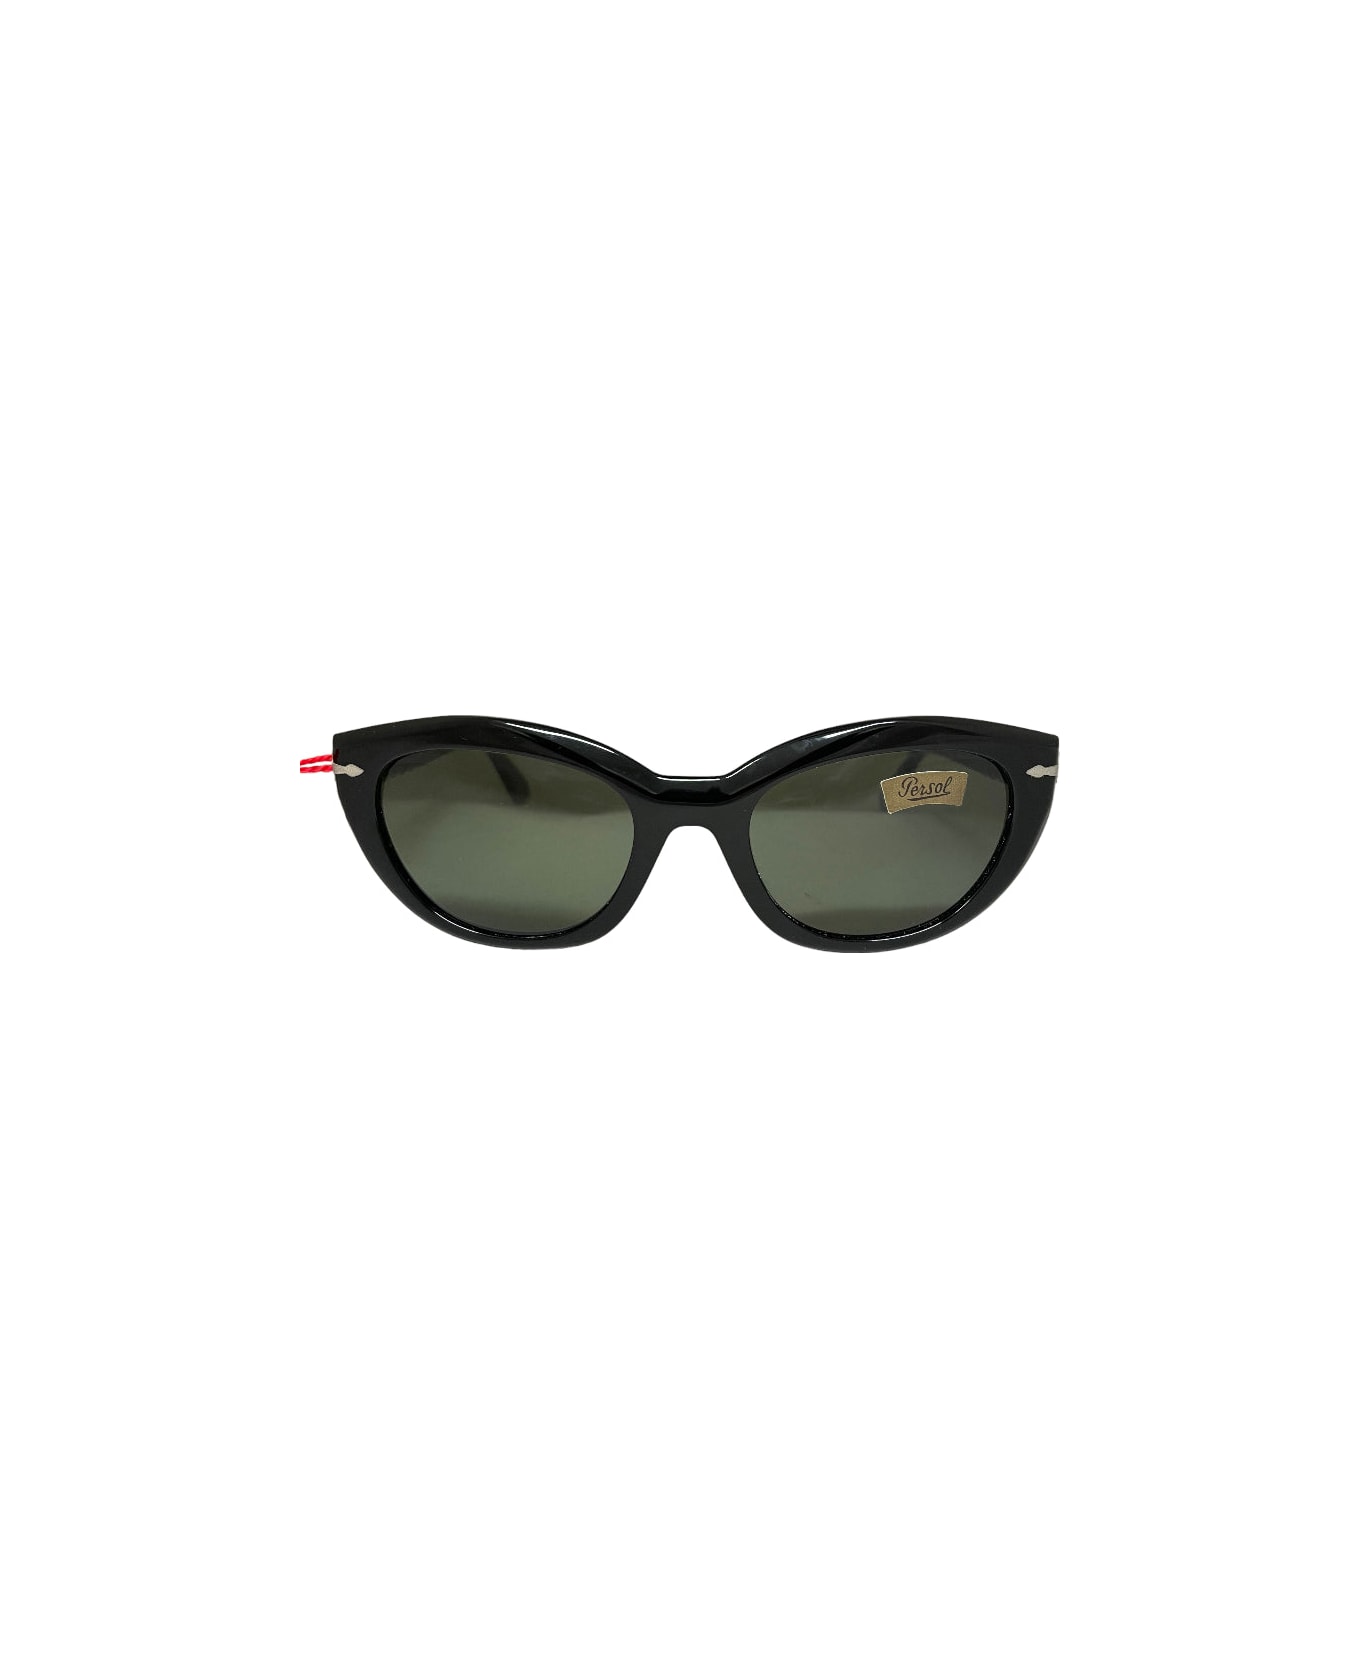 Persol 843 - Black Sunglasses